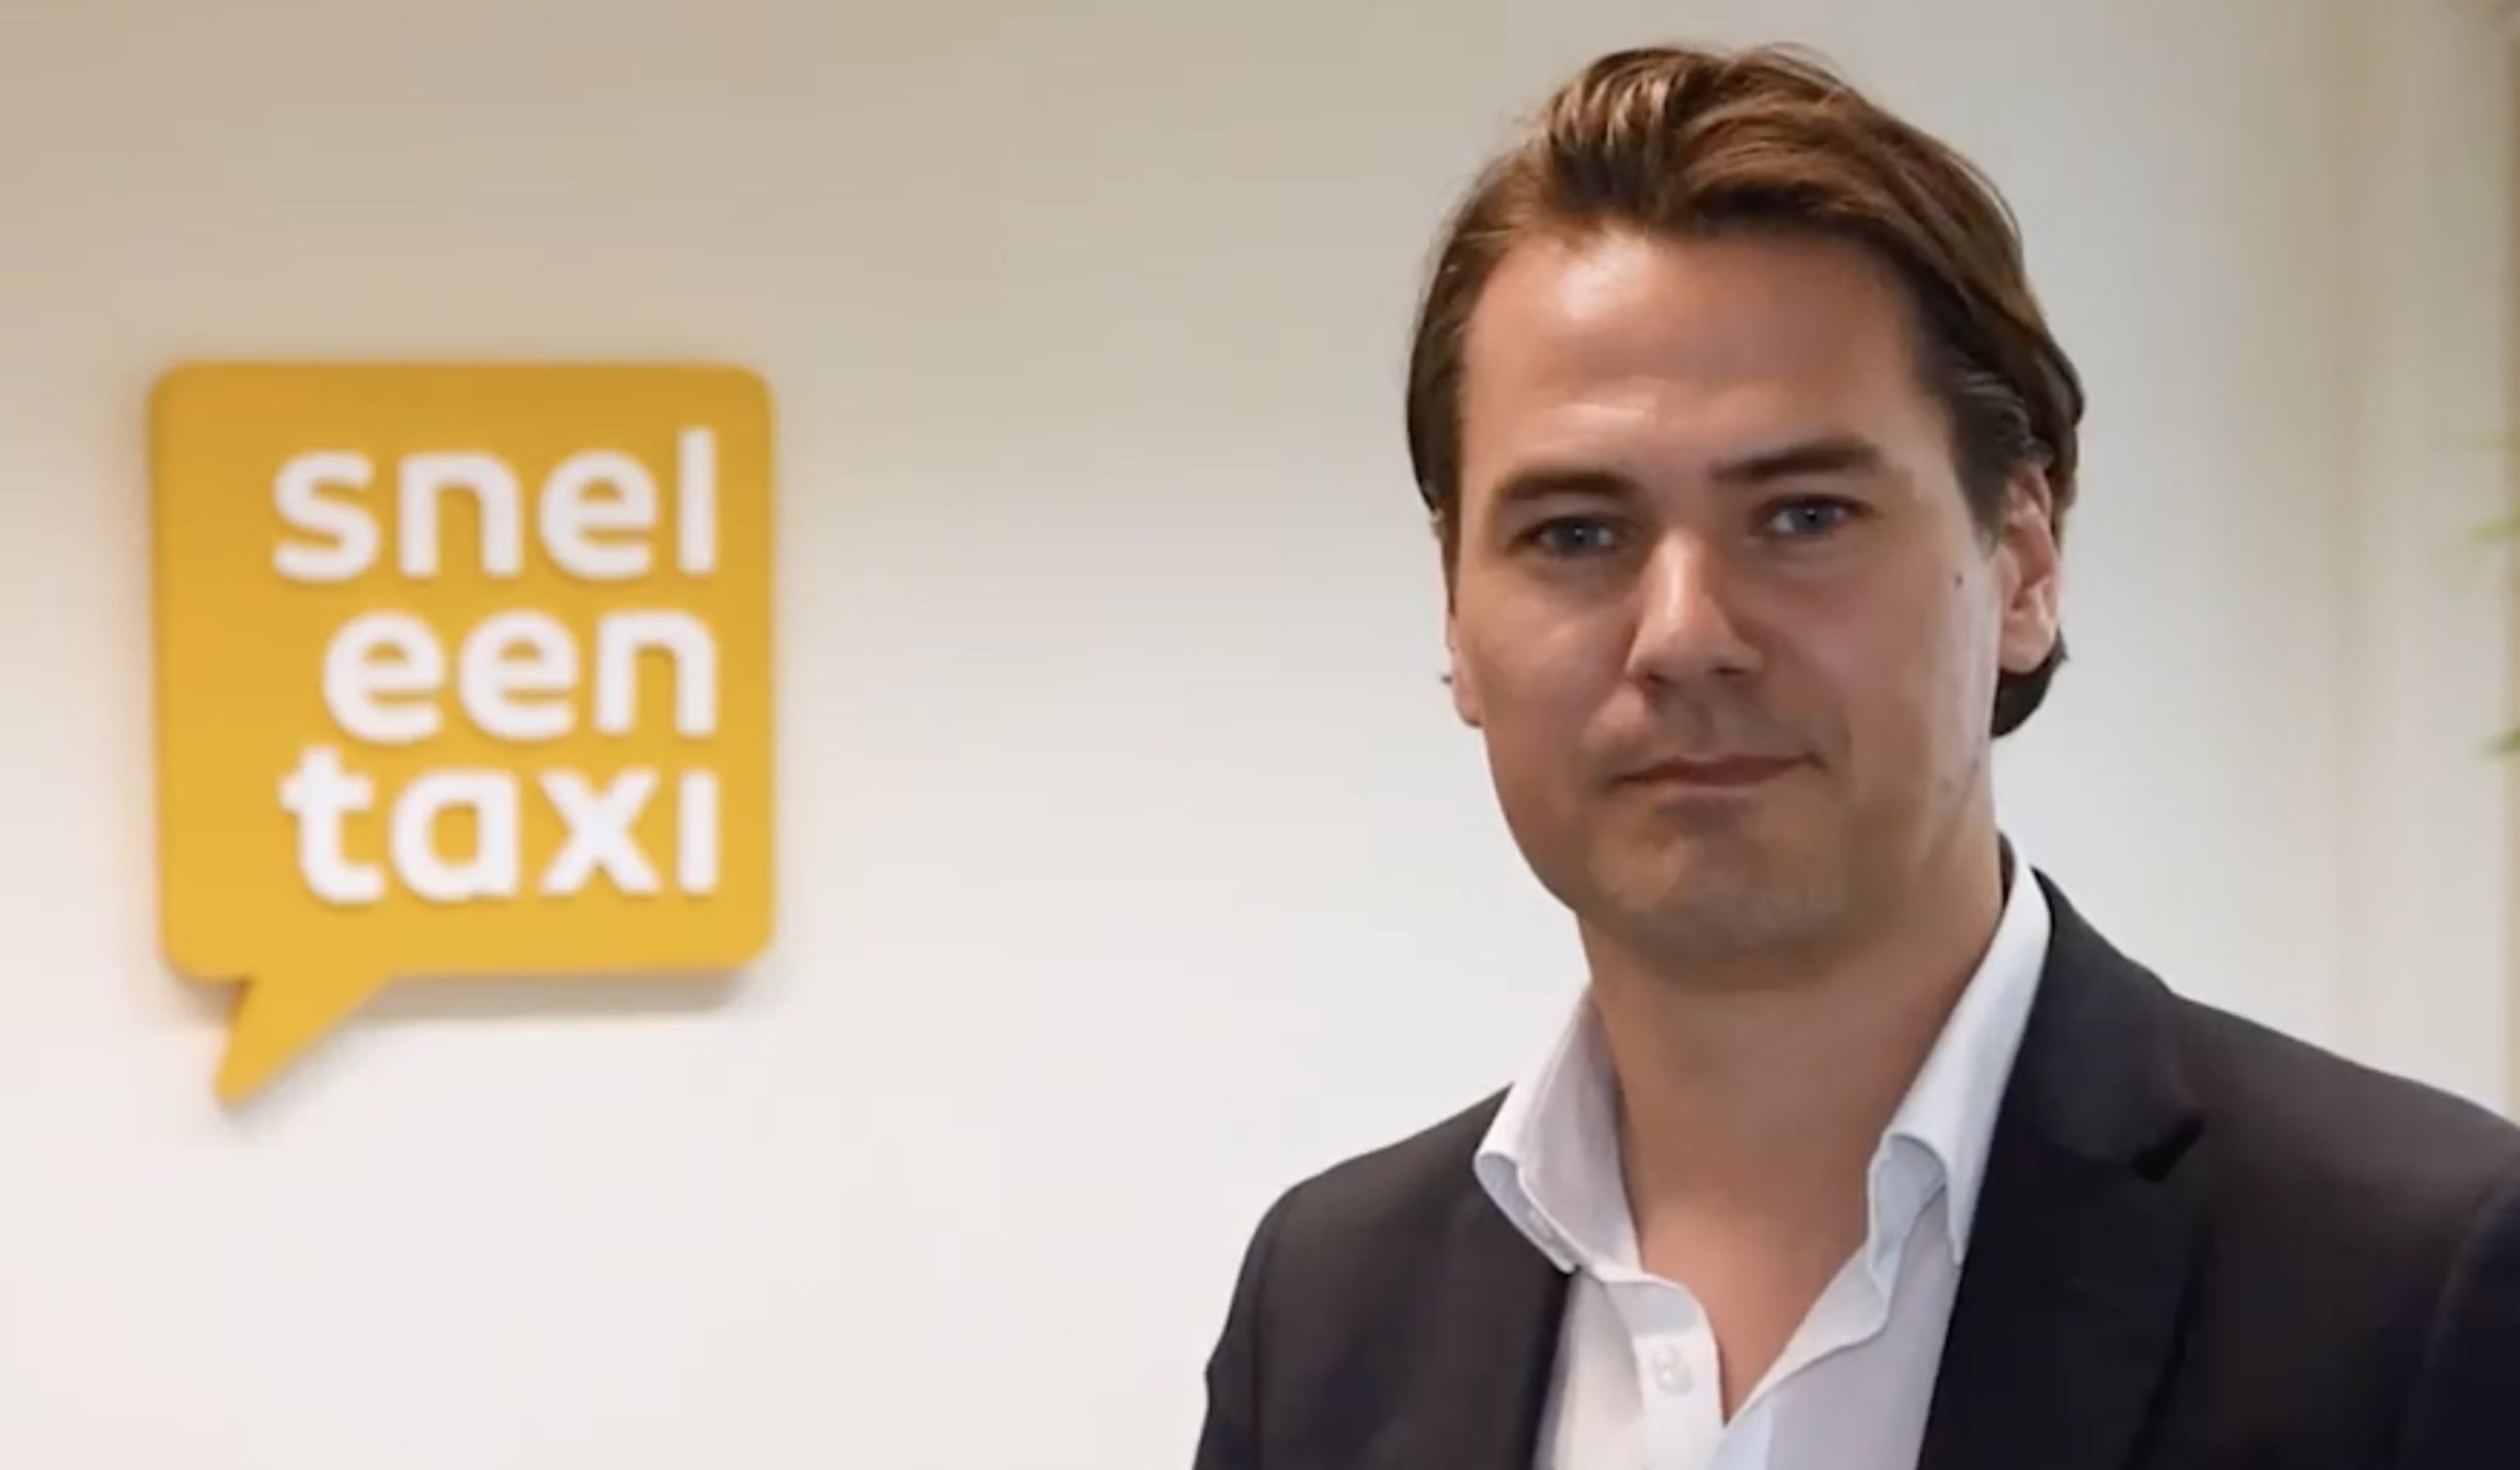 Sneleentaxi tar in 2,1 miljoner euro från investerare